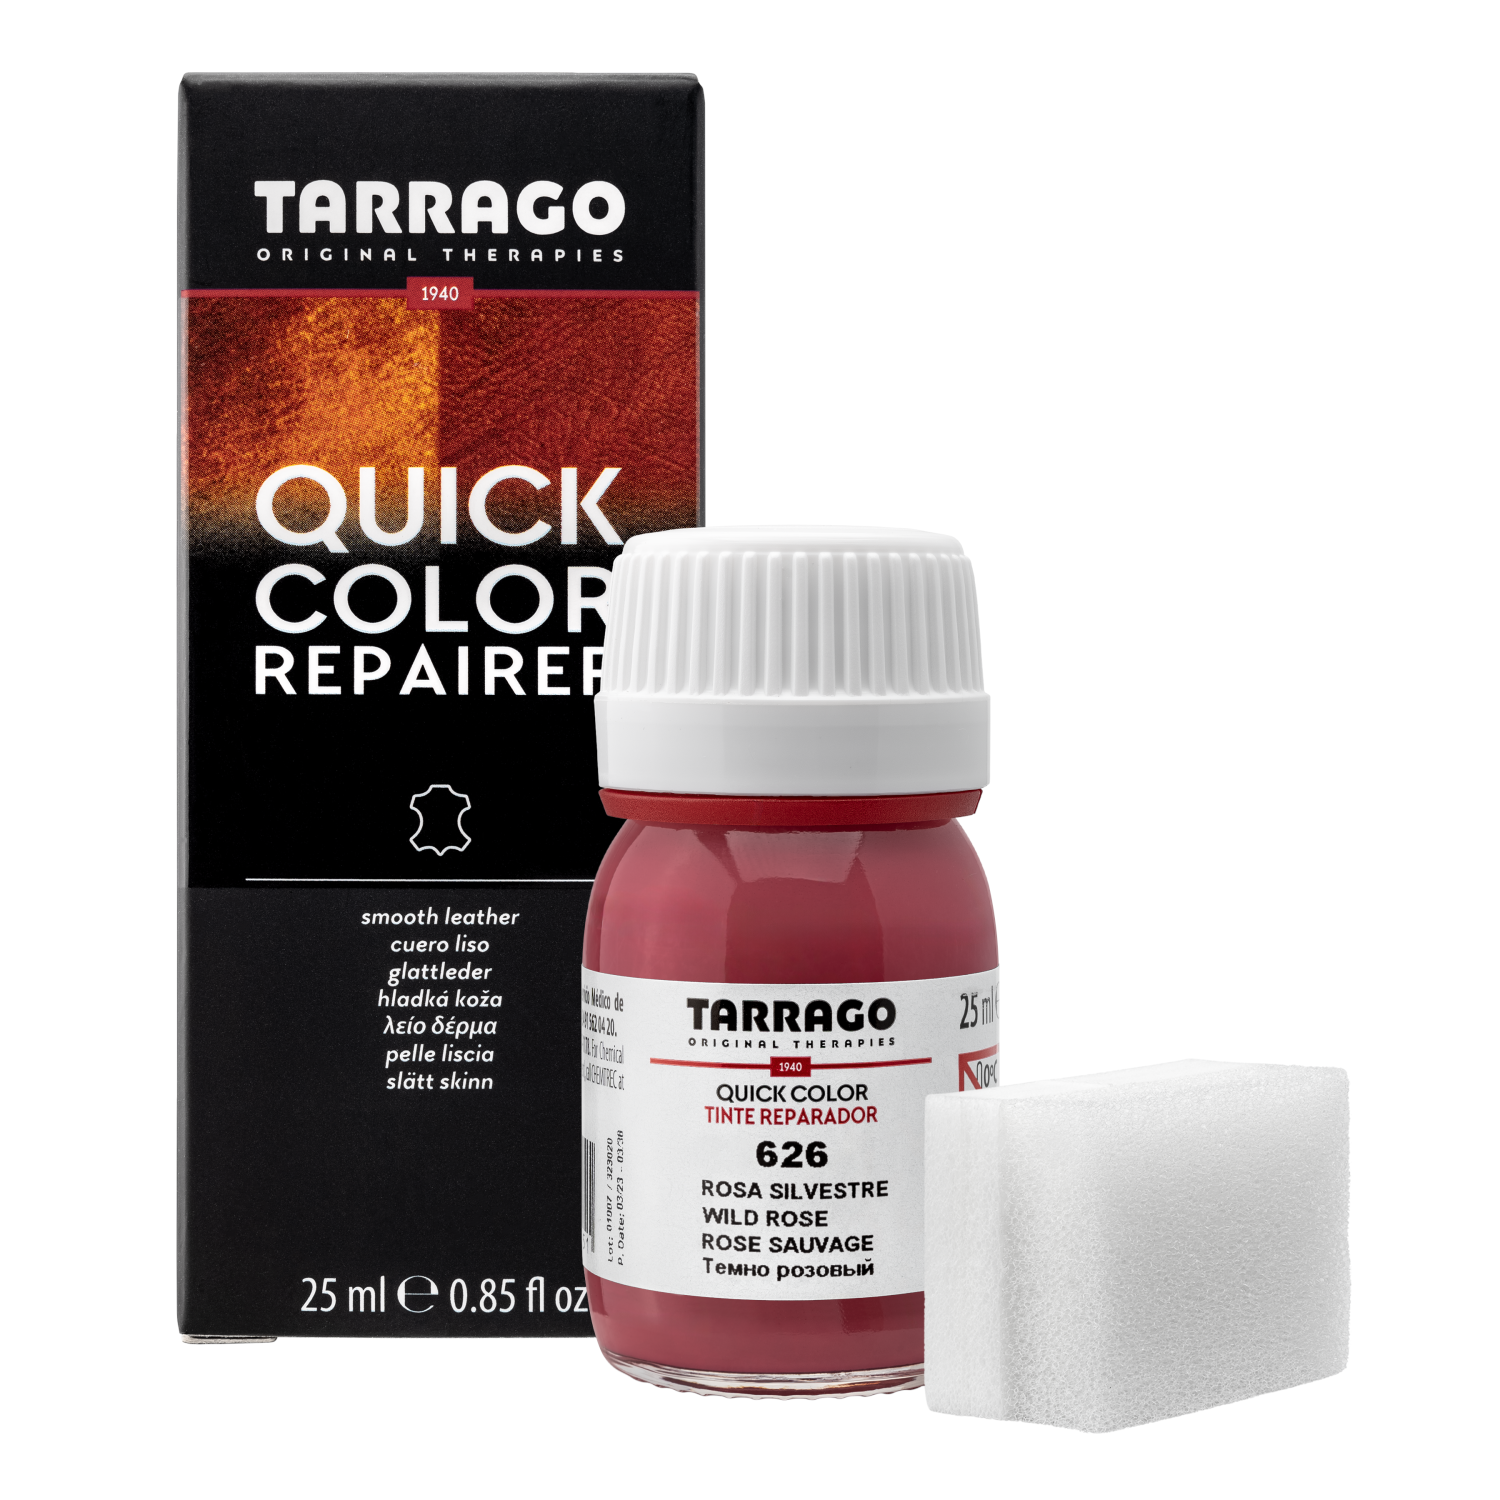 Крем-восстановитель TARRAGO Quick Color, 626 темно-розовый (wild rose), стекло 25 мл.